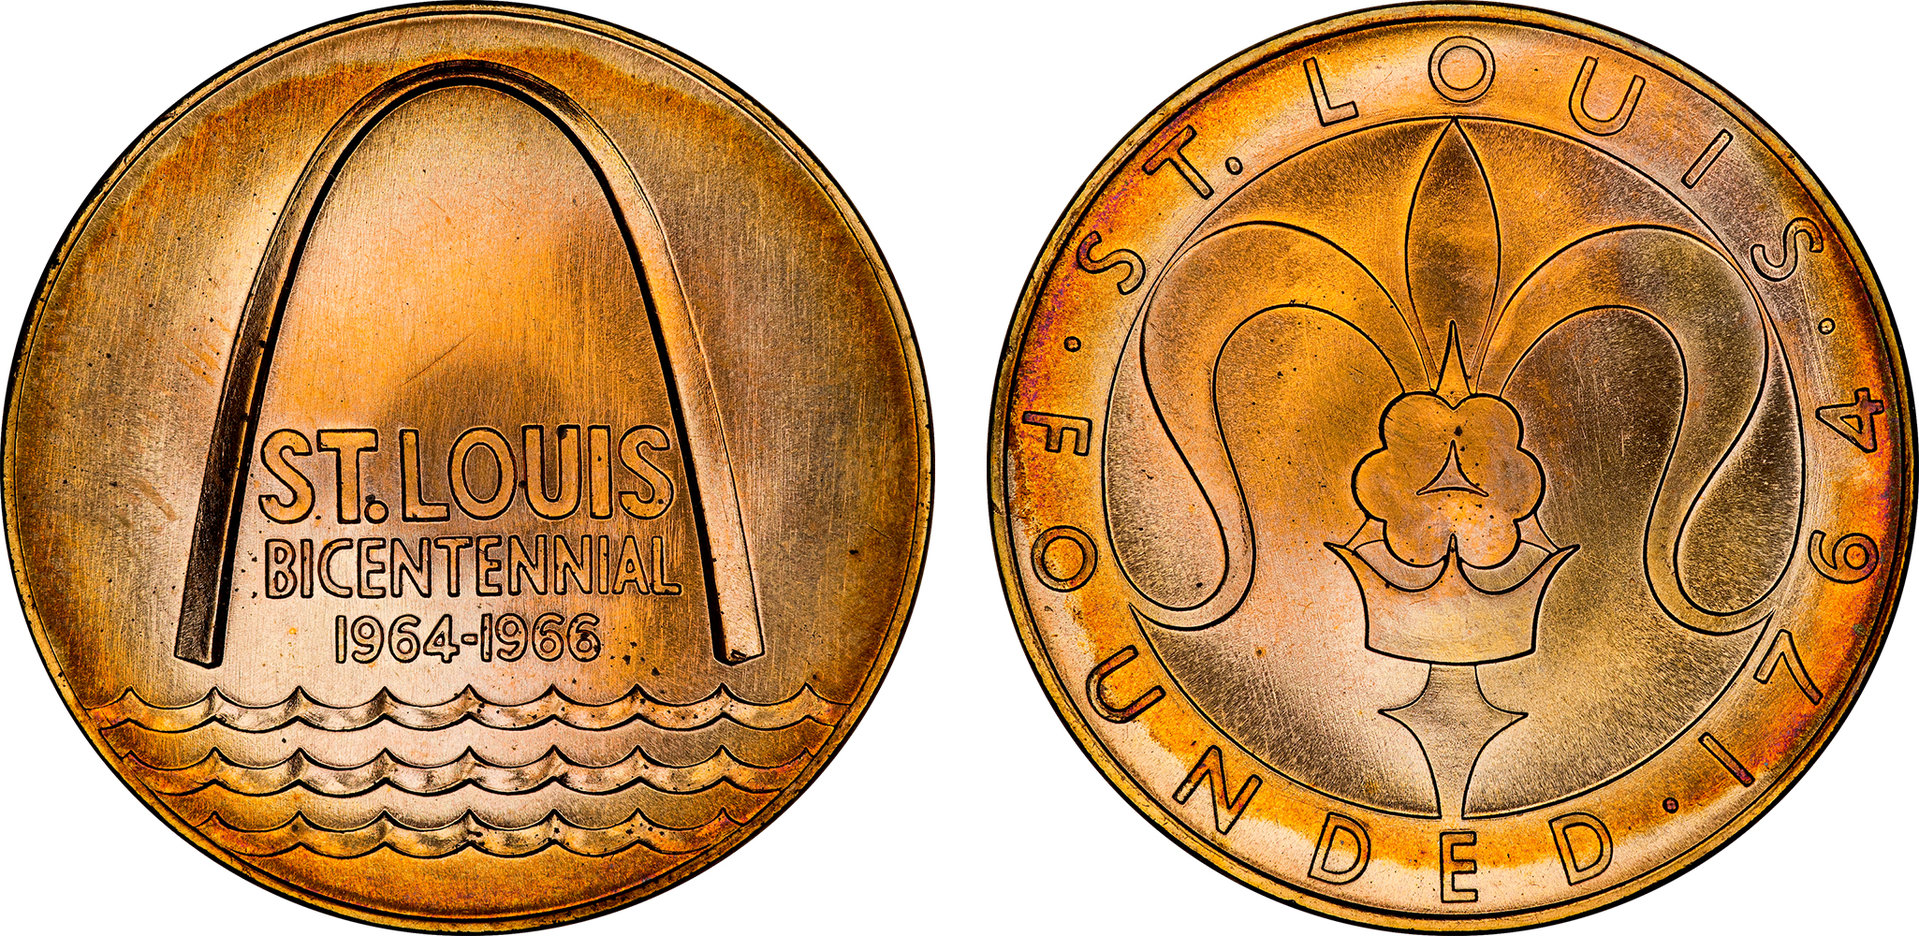 St Louis Bicentennial Medal (Bronze).jpg